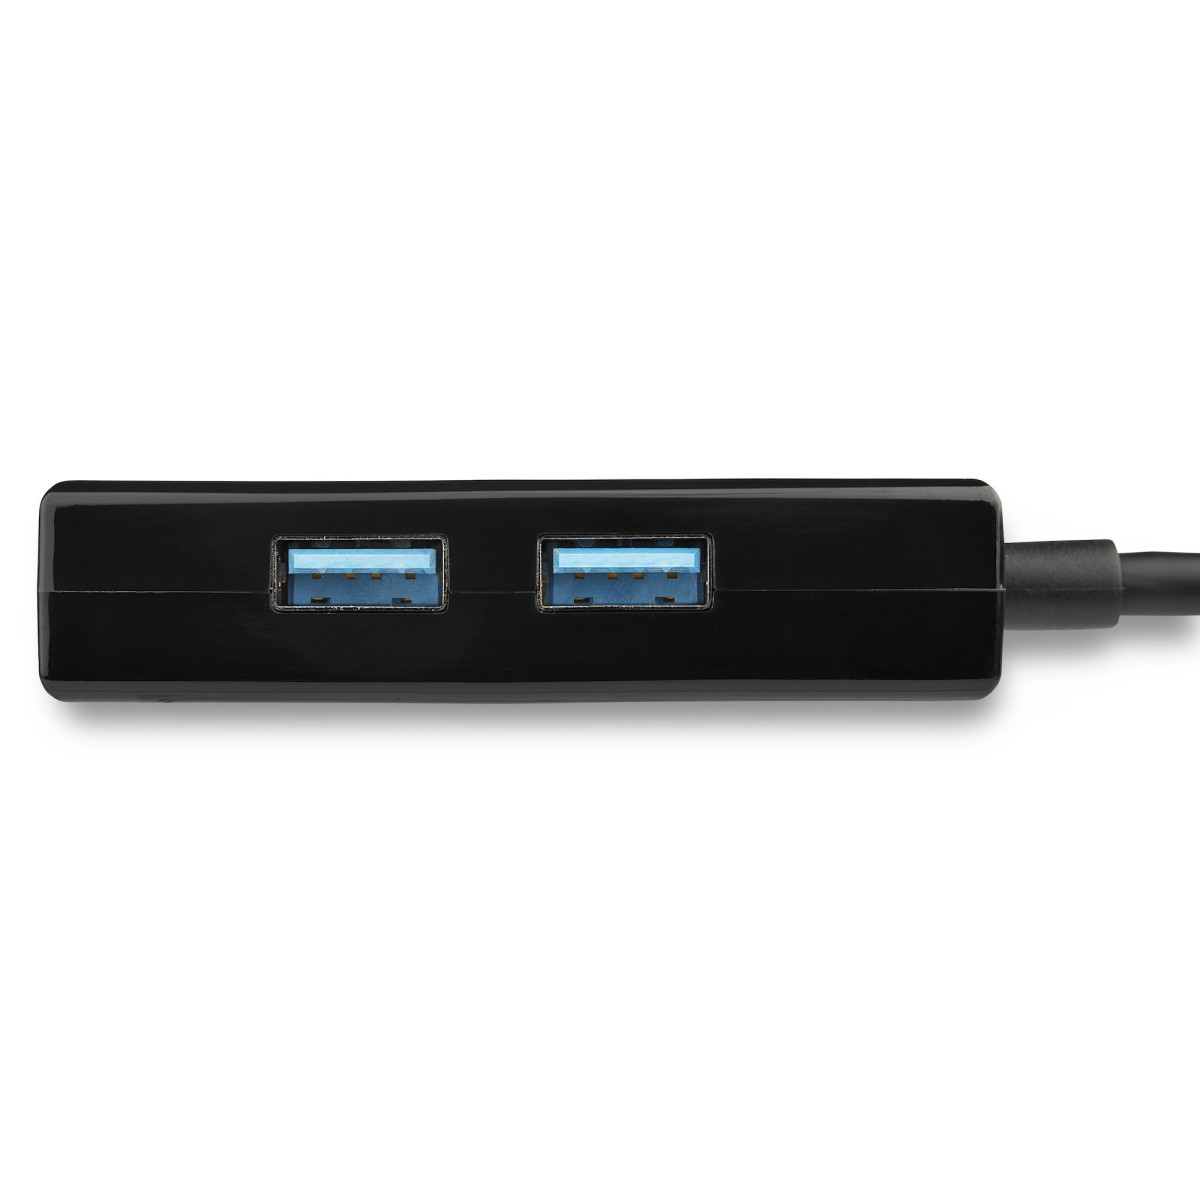 USB 3.0-1GB Network Adpt 2-Port USB Hub